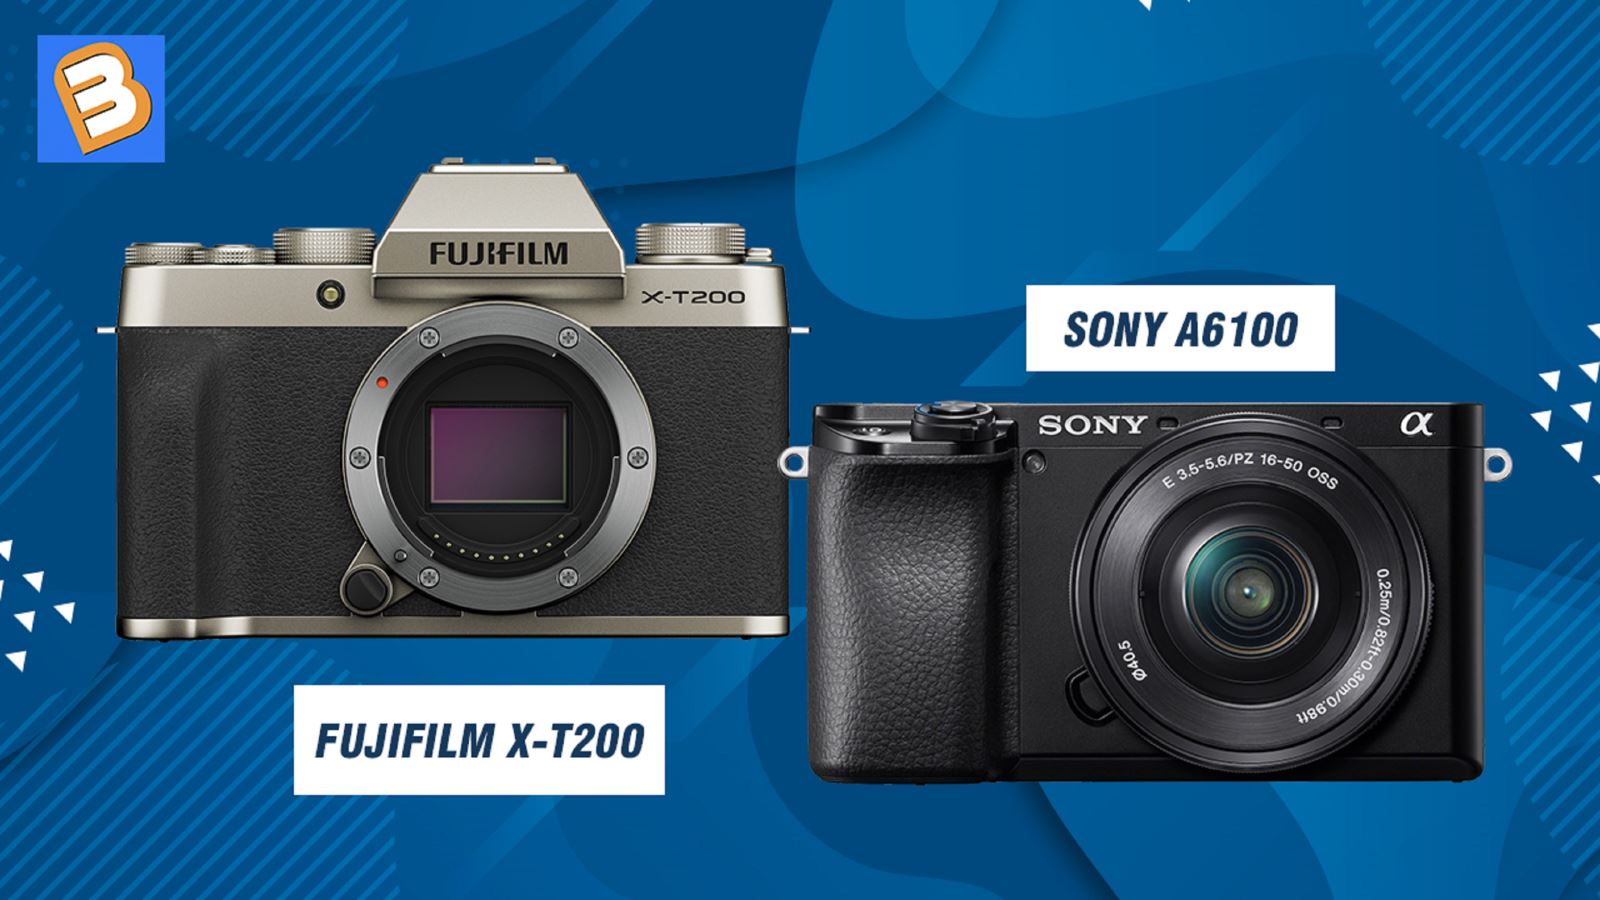 Fujifilm X-T200 với Sony A6100 - Những điểm khác biệt chính